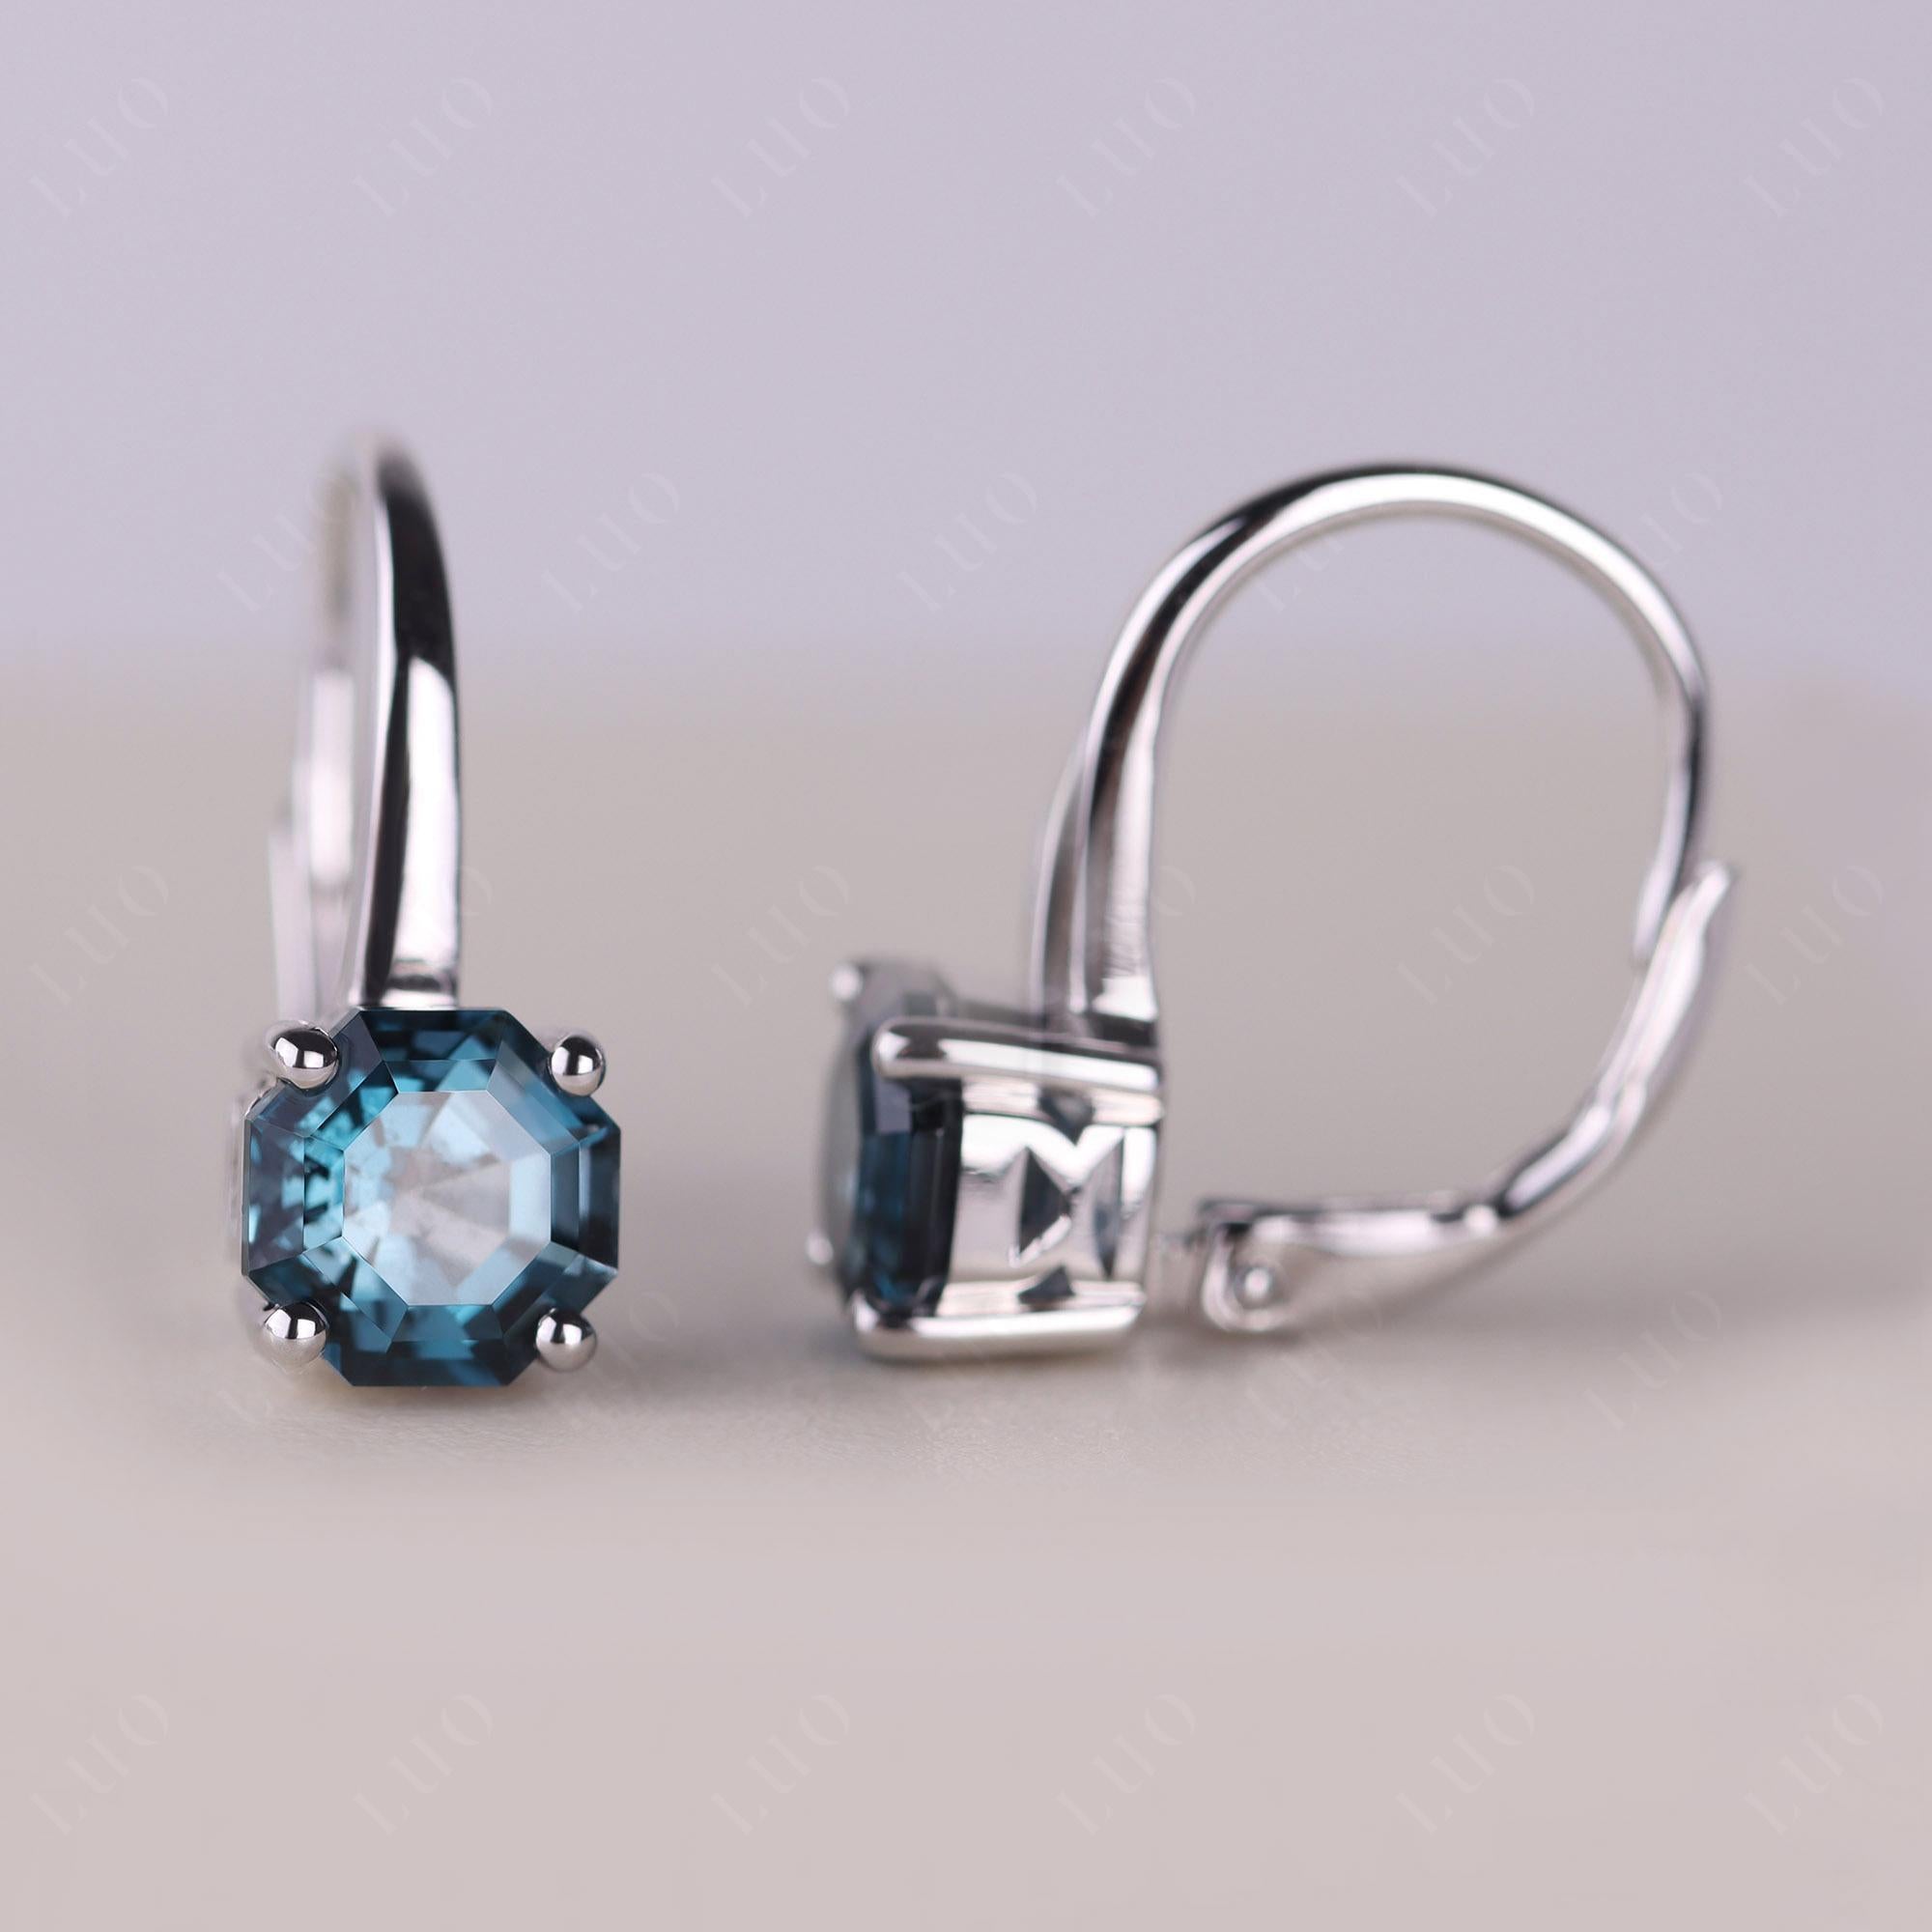 Octagon Cut London Blue Topaz Leverback Earrings - LUO Jewelry